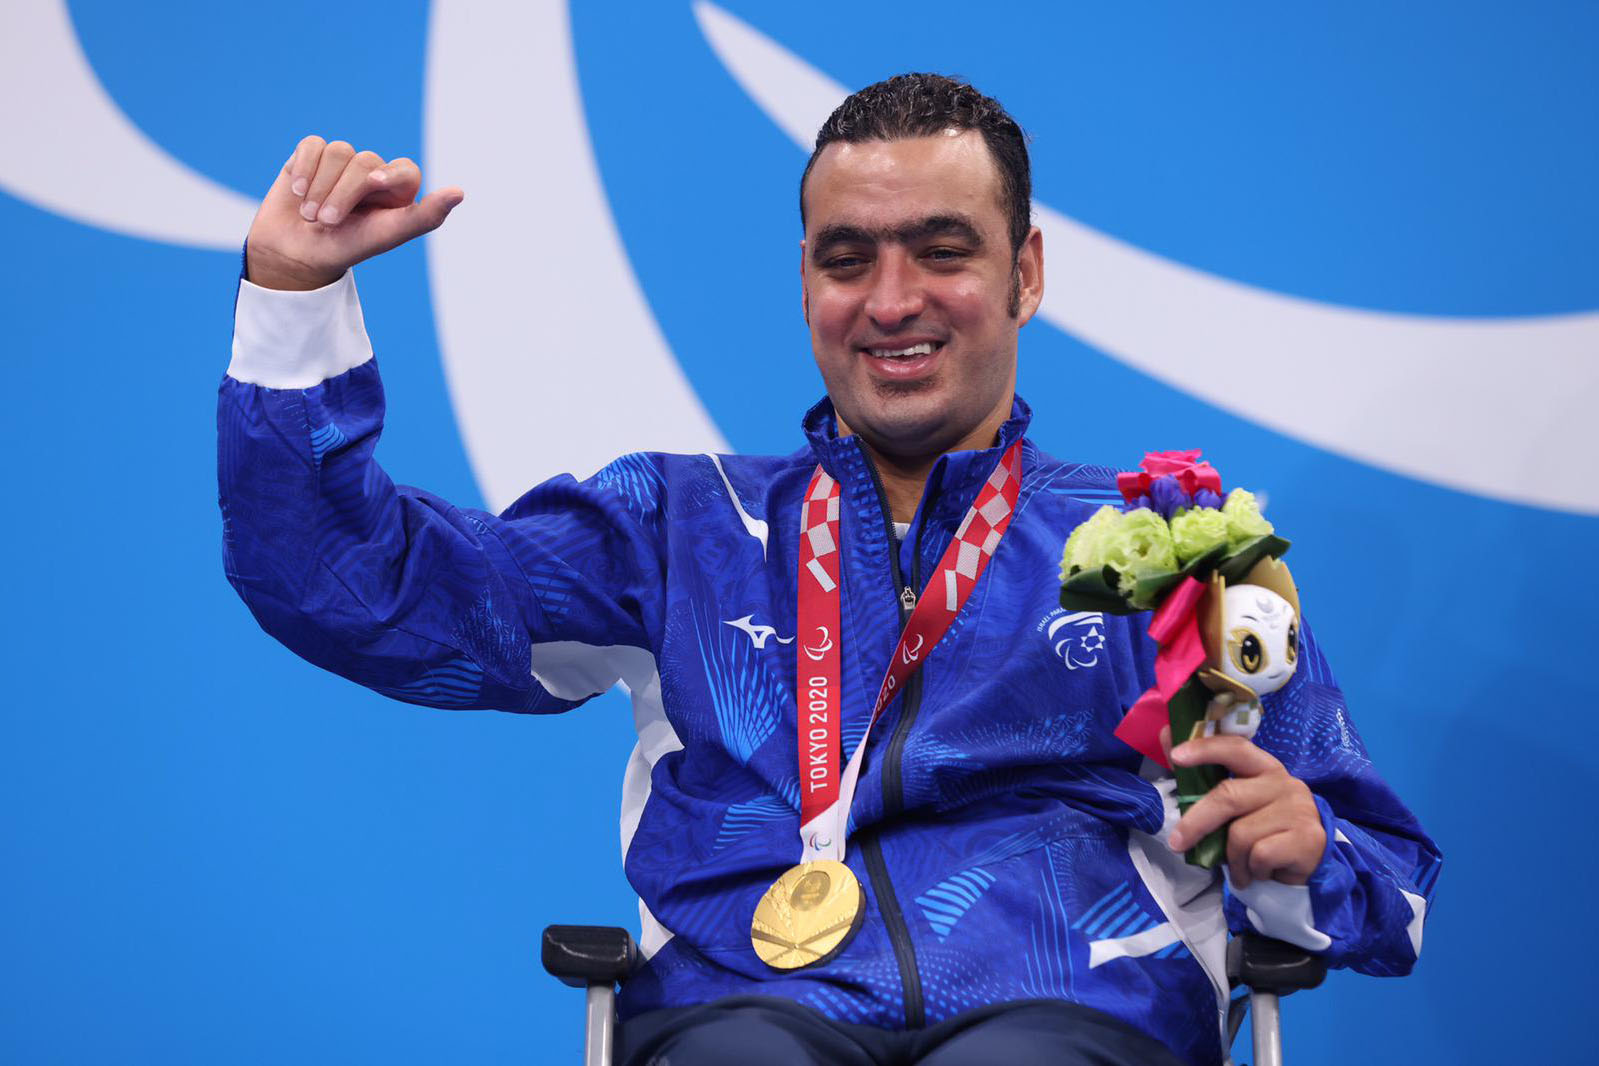 إياد شلبي يفوز بالميدالية الذهبية في الألعاب البارالمبية في طوكيو (تصوير: جلعاد كفلرتشيك)